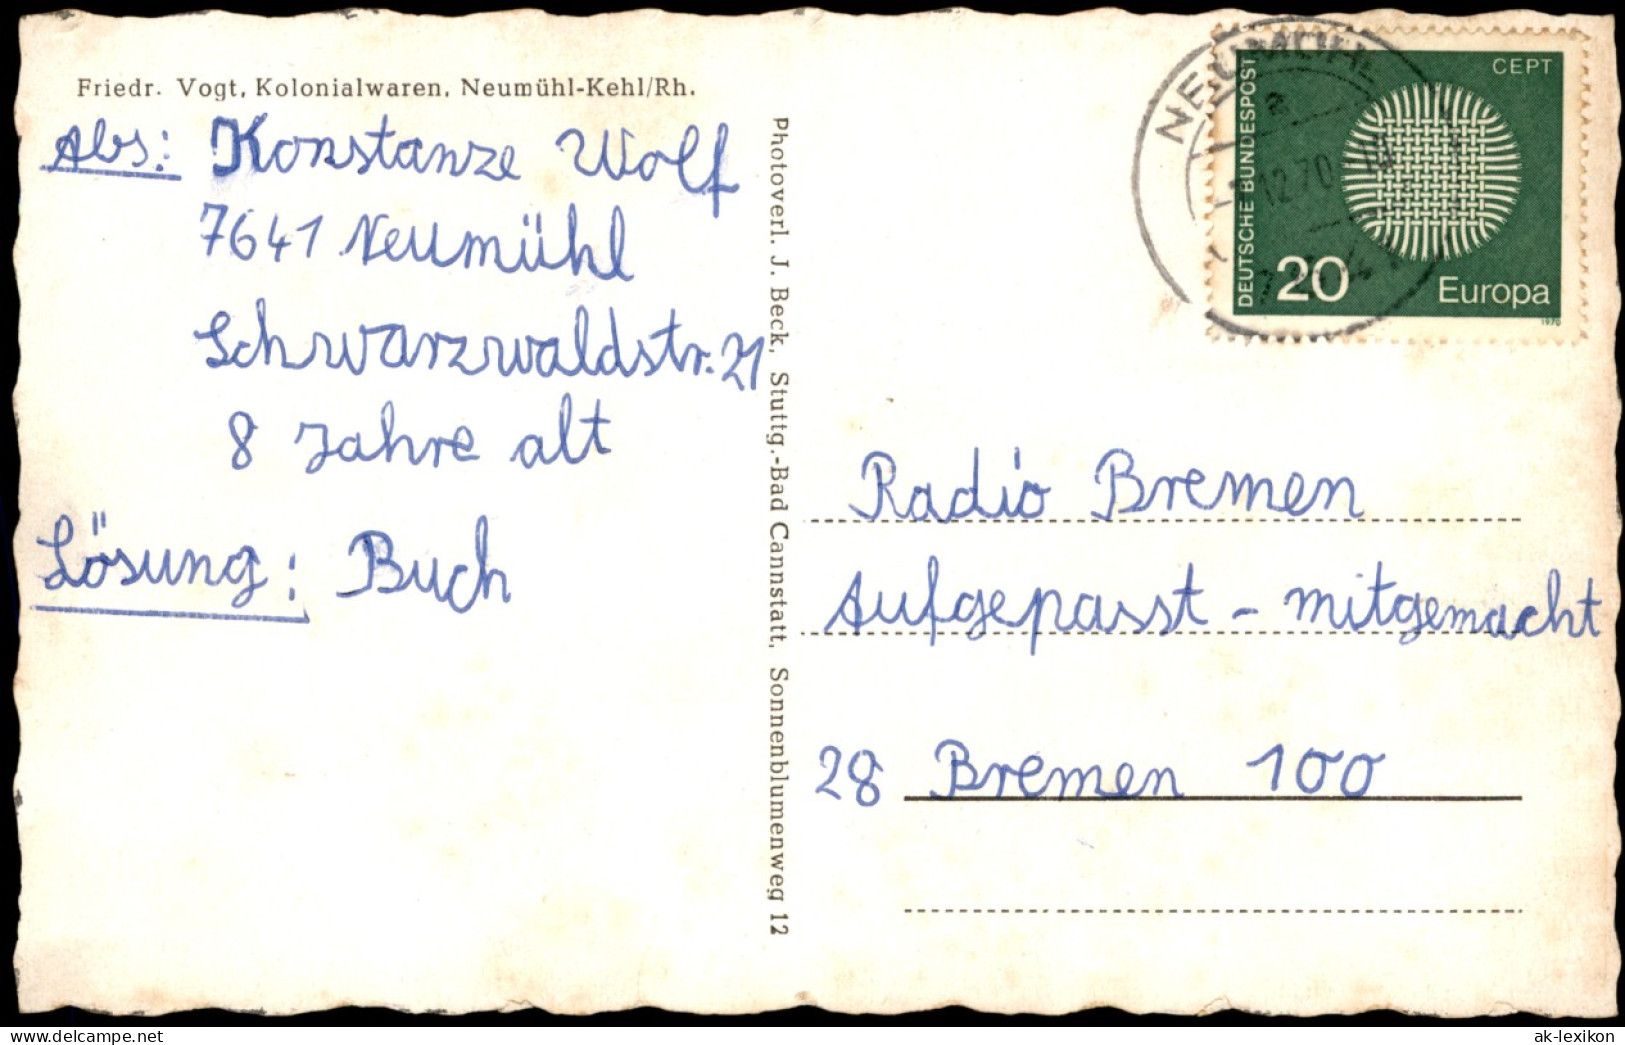 Neumühl-Kehl (Rhein) MB: Fachwerk Mit Partie B. Gasthaus Zum Pflug Schule 1970 - Kehl